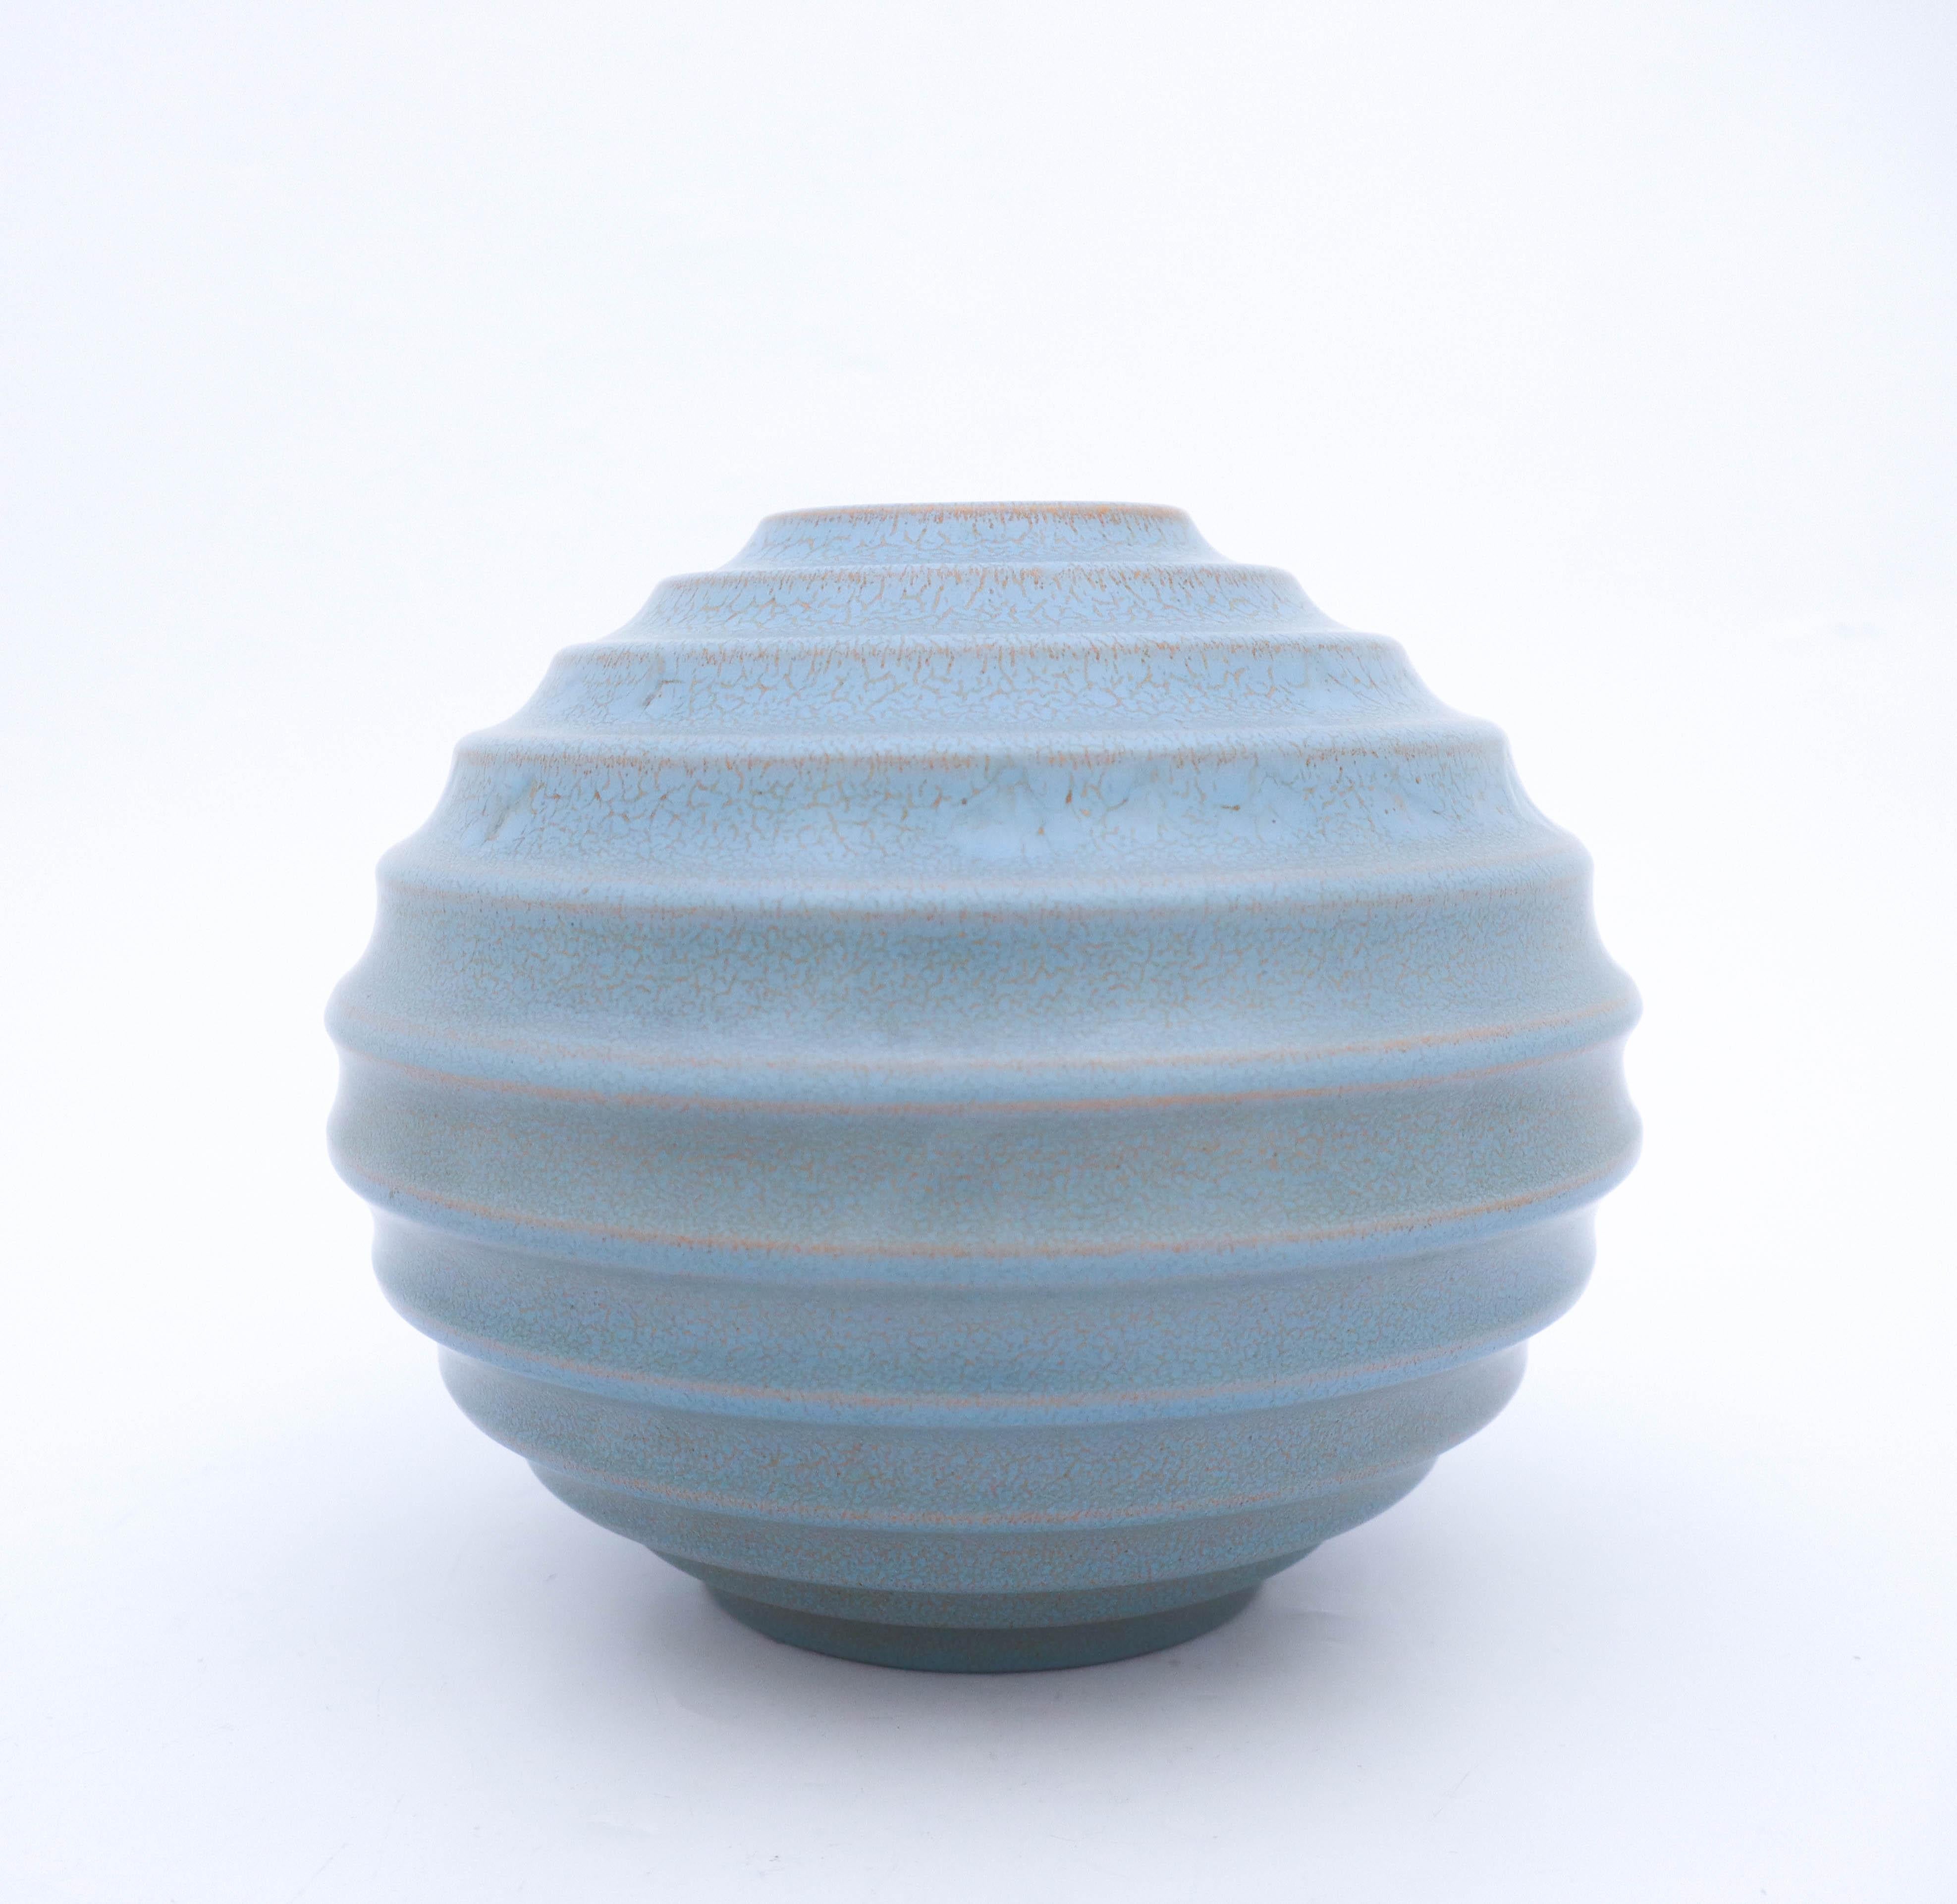 Eine kugelförmige Vase, entworfen von Ewald Dahlskog bei Bo Fajans in Gefle in den 1930er Jahren. Diese Vasen wurden erstmals 1930 auf der Stockholmer Ausstellung präsentiert, die den Beginn des Funktionalismus darstellte. Die Vase hat eine schöne